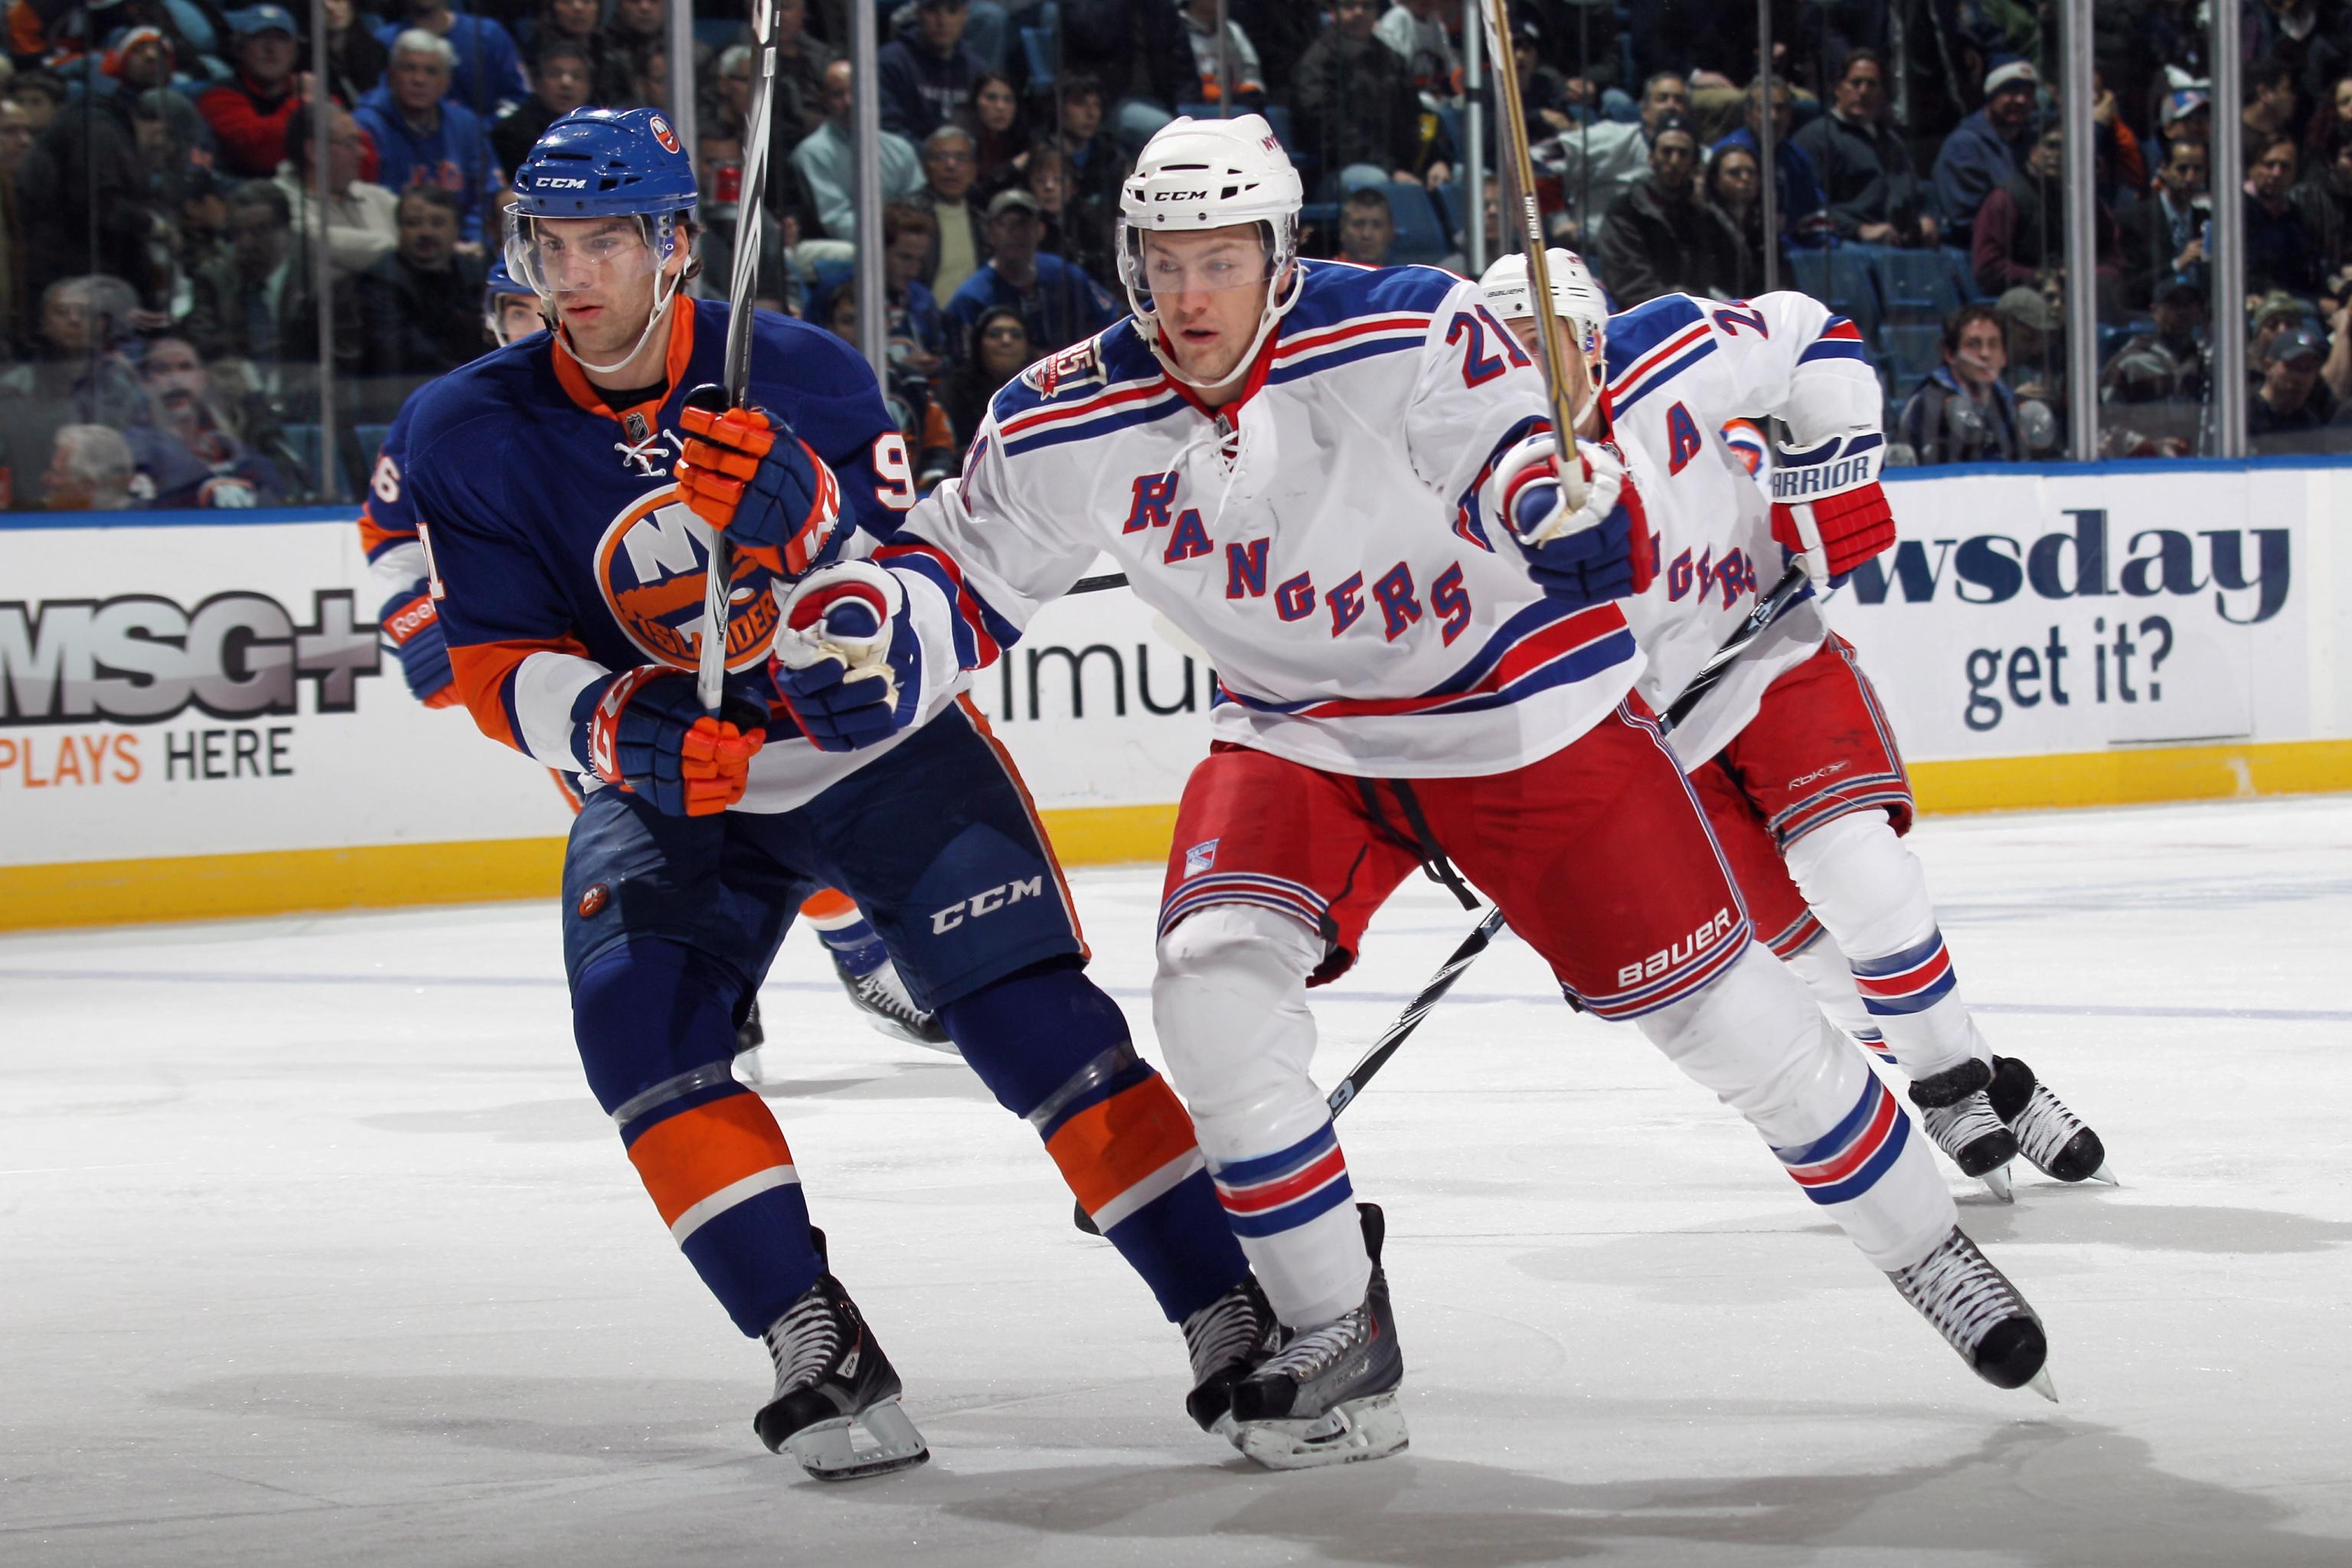 Game Preview: NY Islanders vs. NY Rangers